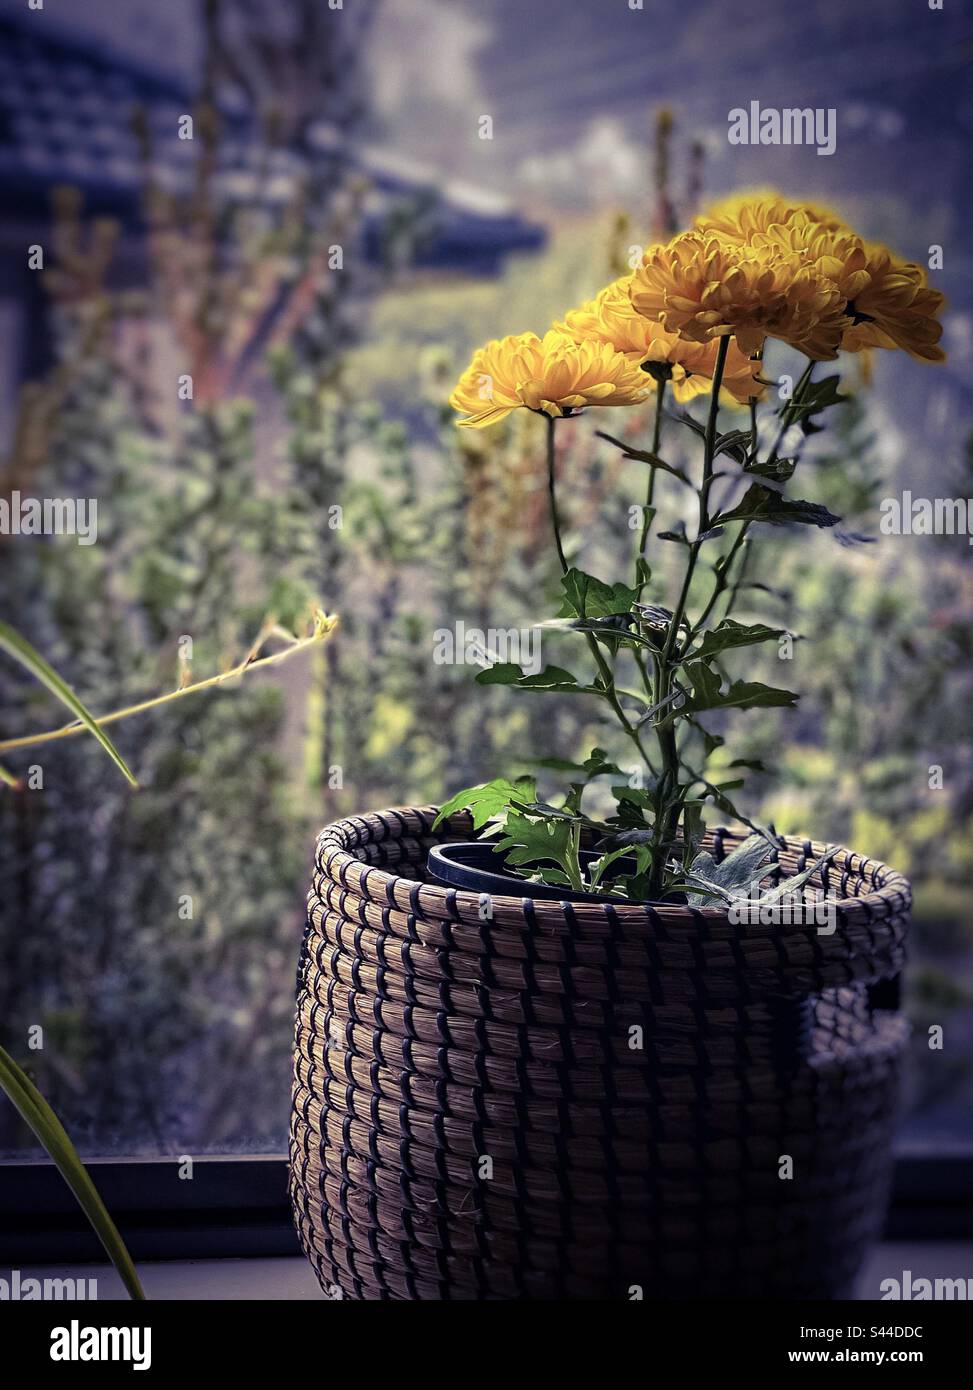 Colore del davanzale su una nebbia, mattina di autunno. Pianta di fiore di crisantemo giallo in un cesto in un davanzale contro la vista della finestra del giardino su una mattina di nebbia. Foto Stock